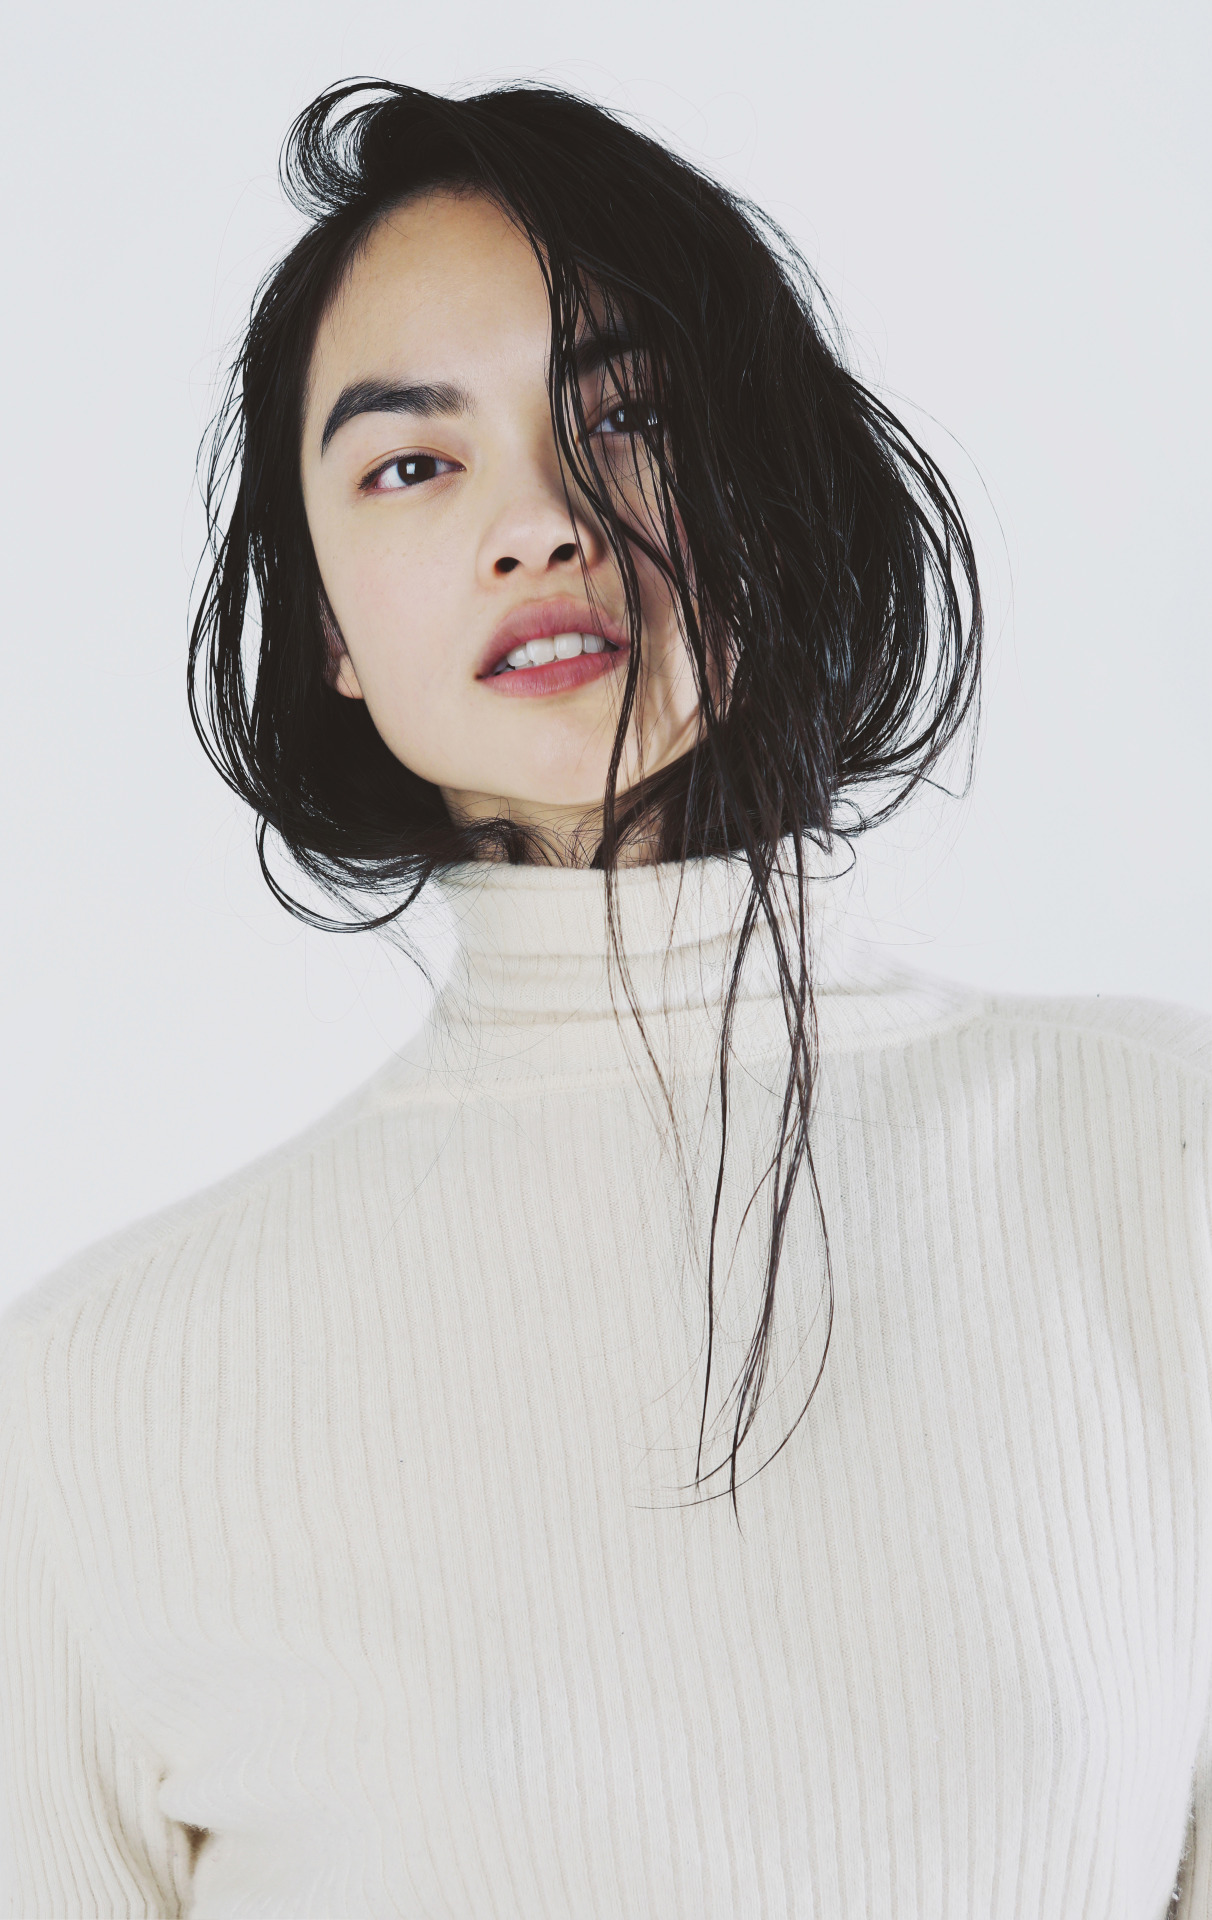  Jen Dau @ New York Models by Haylee Barsky 